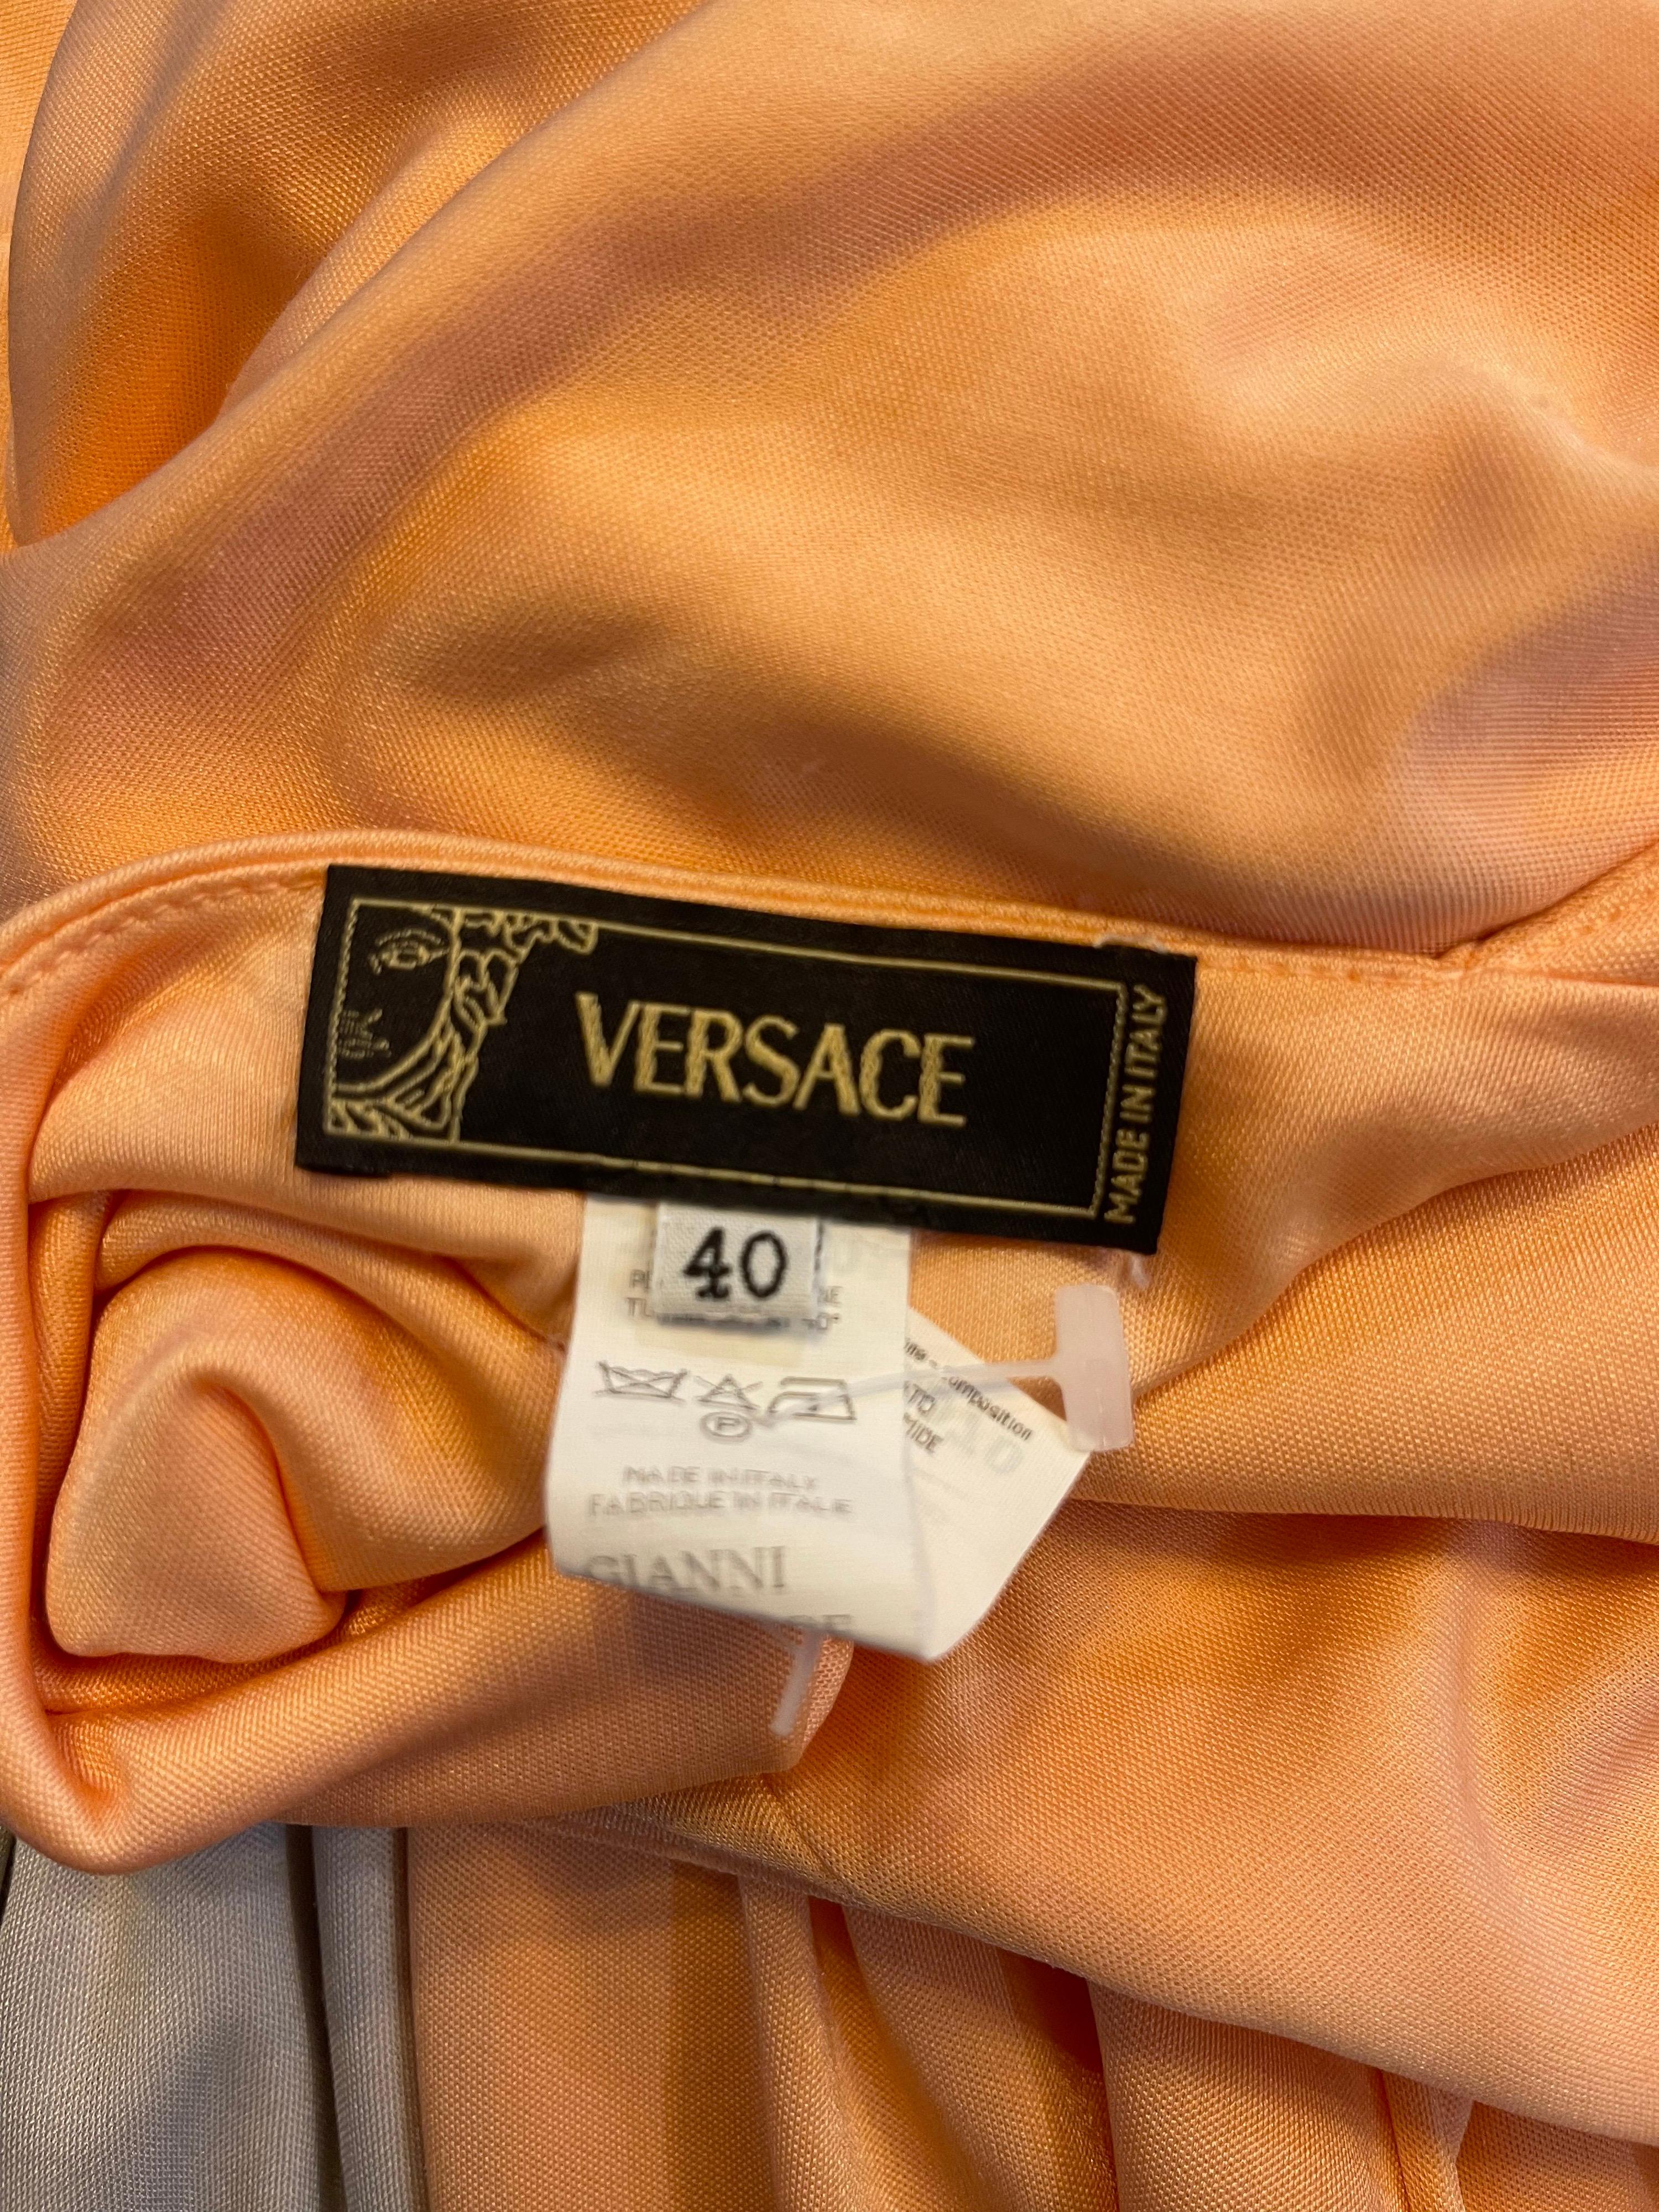 versace halter dress